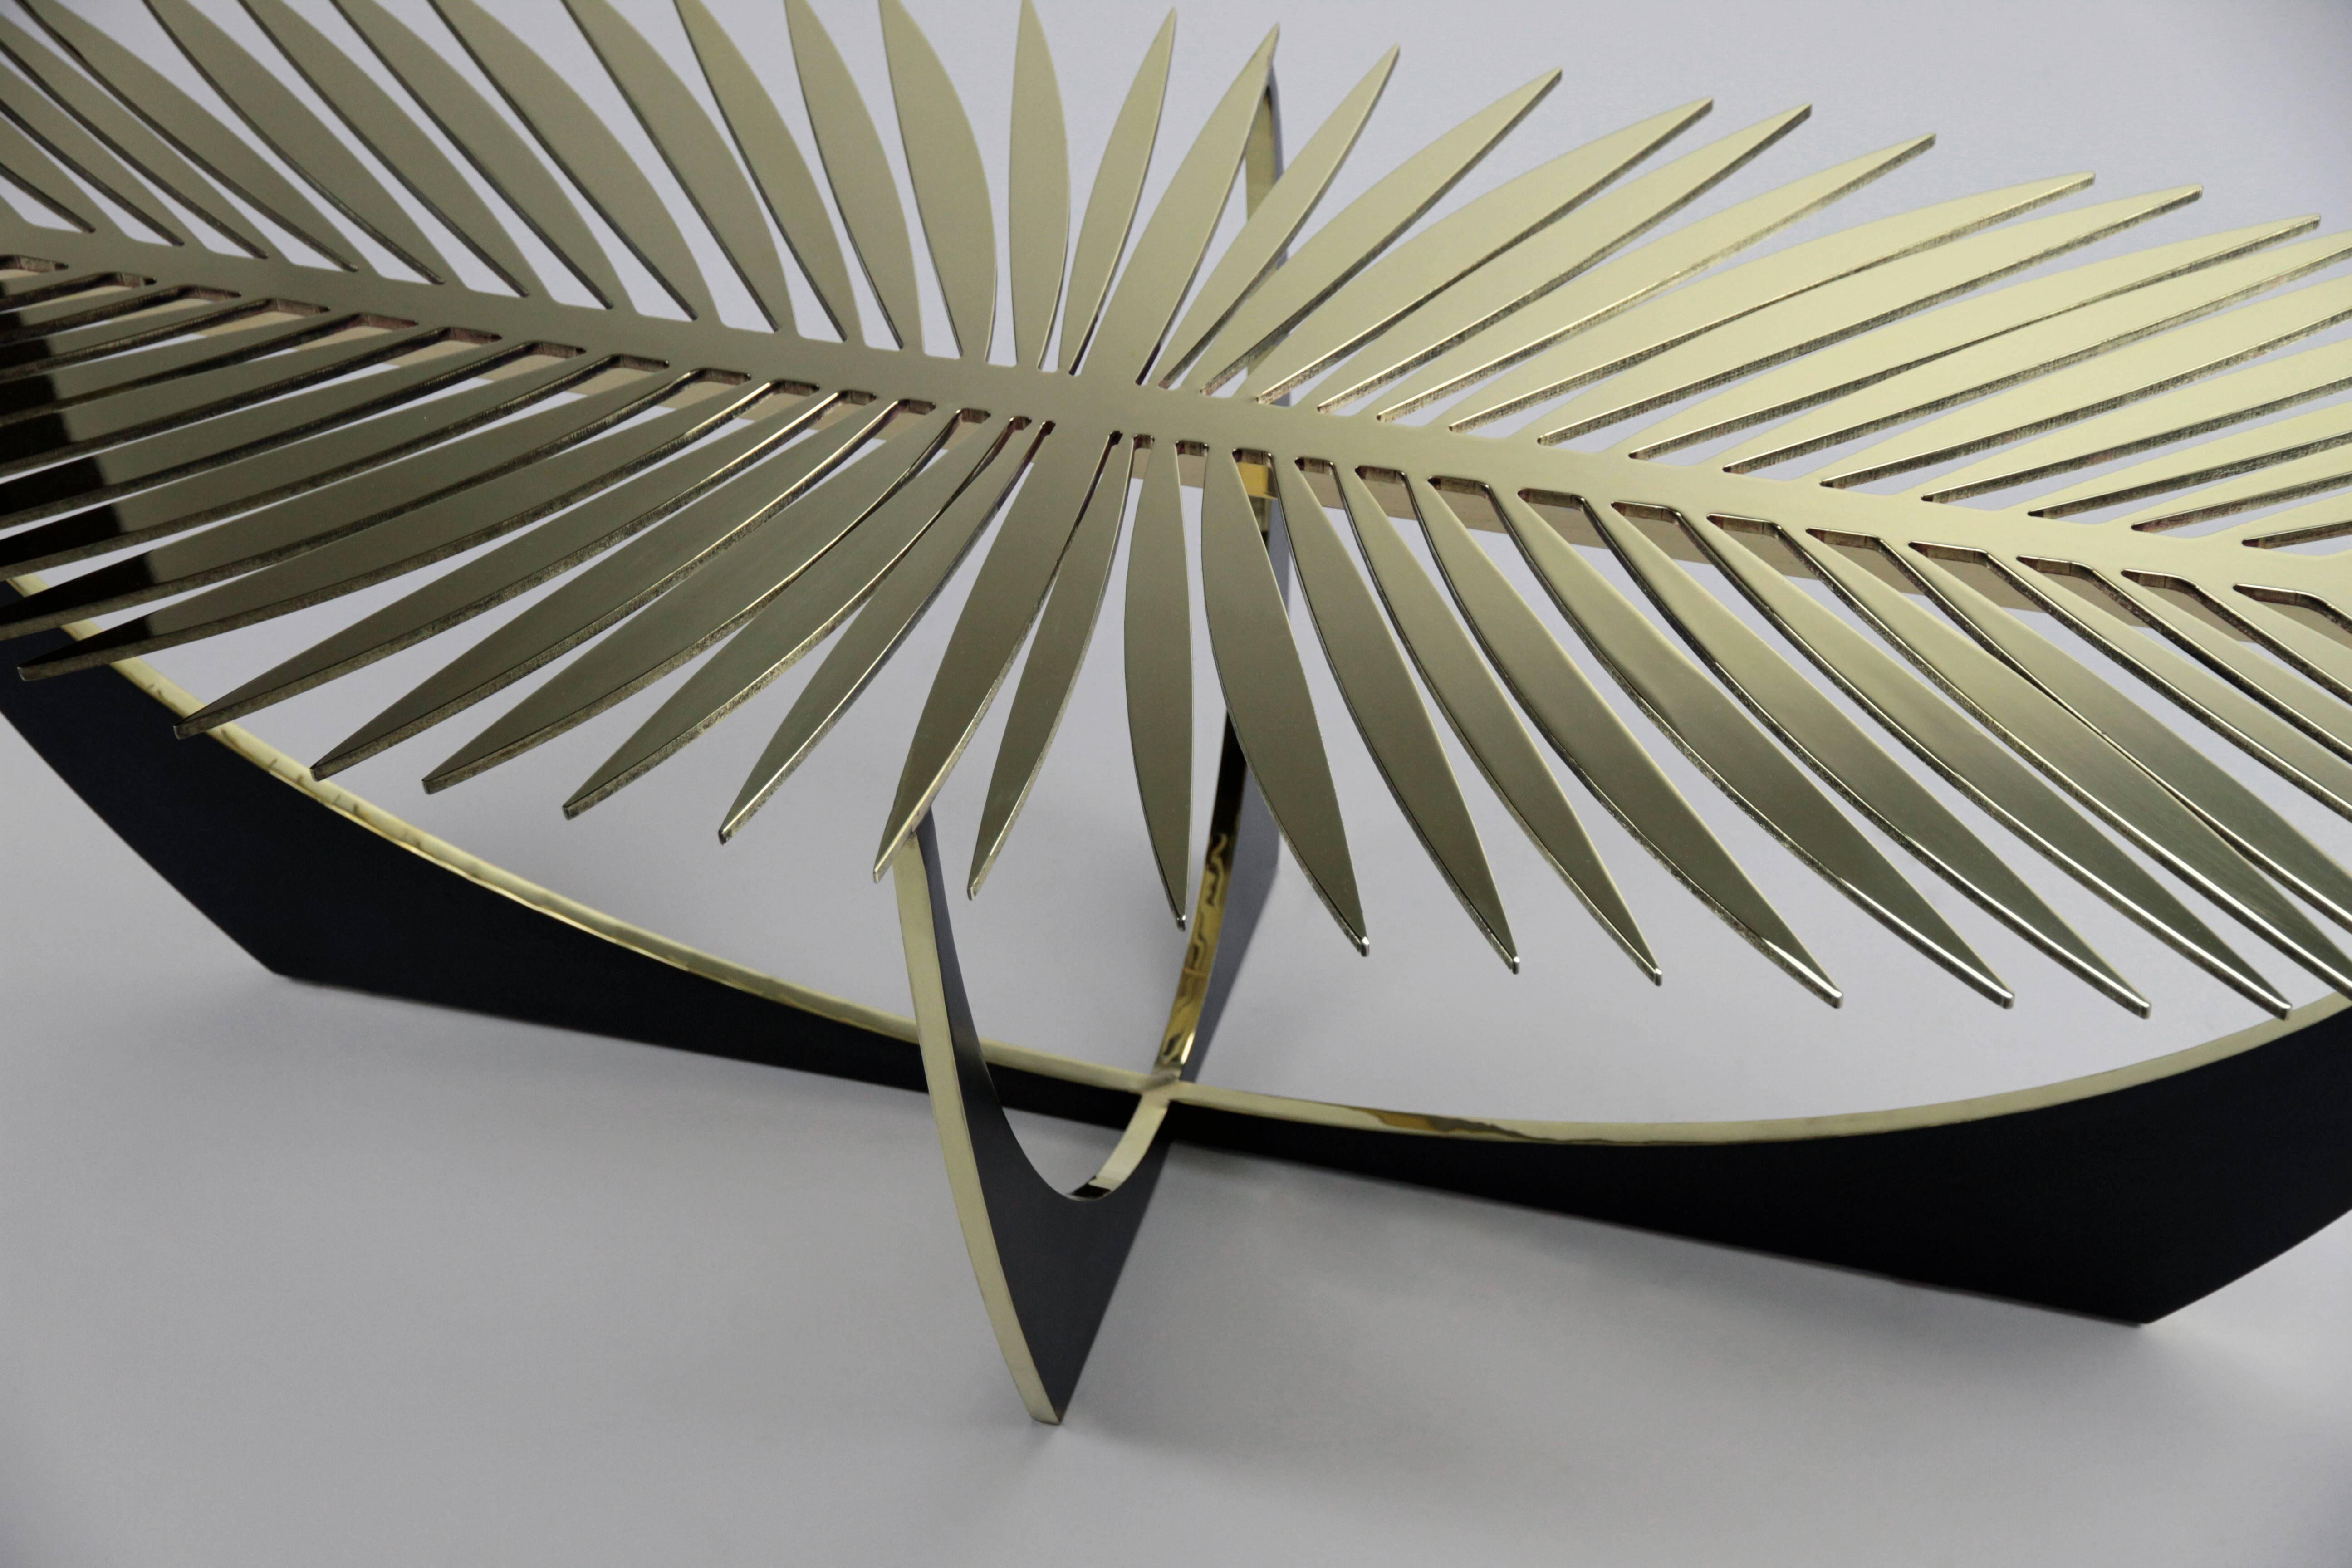 Der Double Frond Table ist ebenso sehr eine Skulptur wie ein Tisch.  Dies ist eines dieser Stücke, die in natura viel interessanter sind als auf einem Foto.  Von oben beleuchtet, wirft der Tisch schöne Schatten auf den Boden und reflektiert die